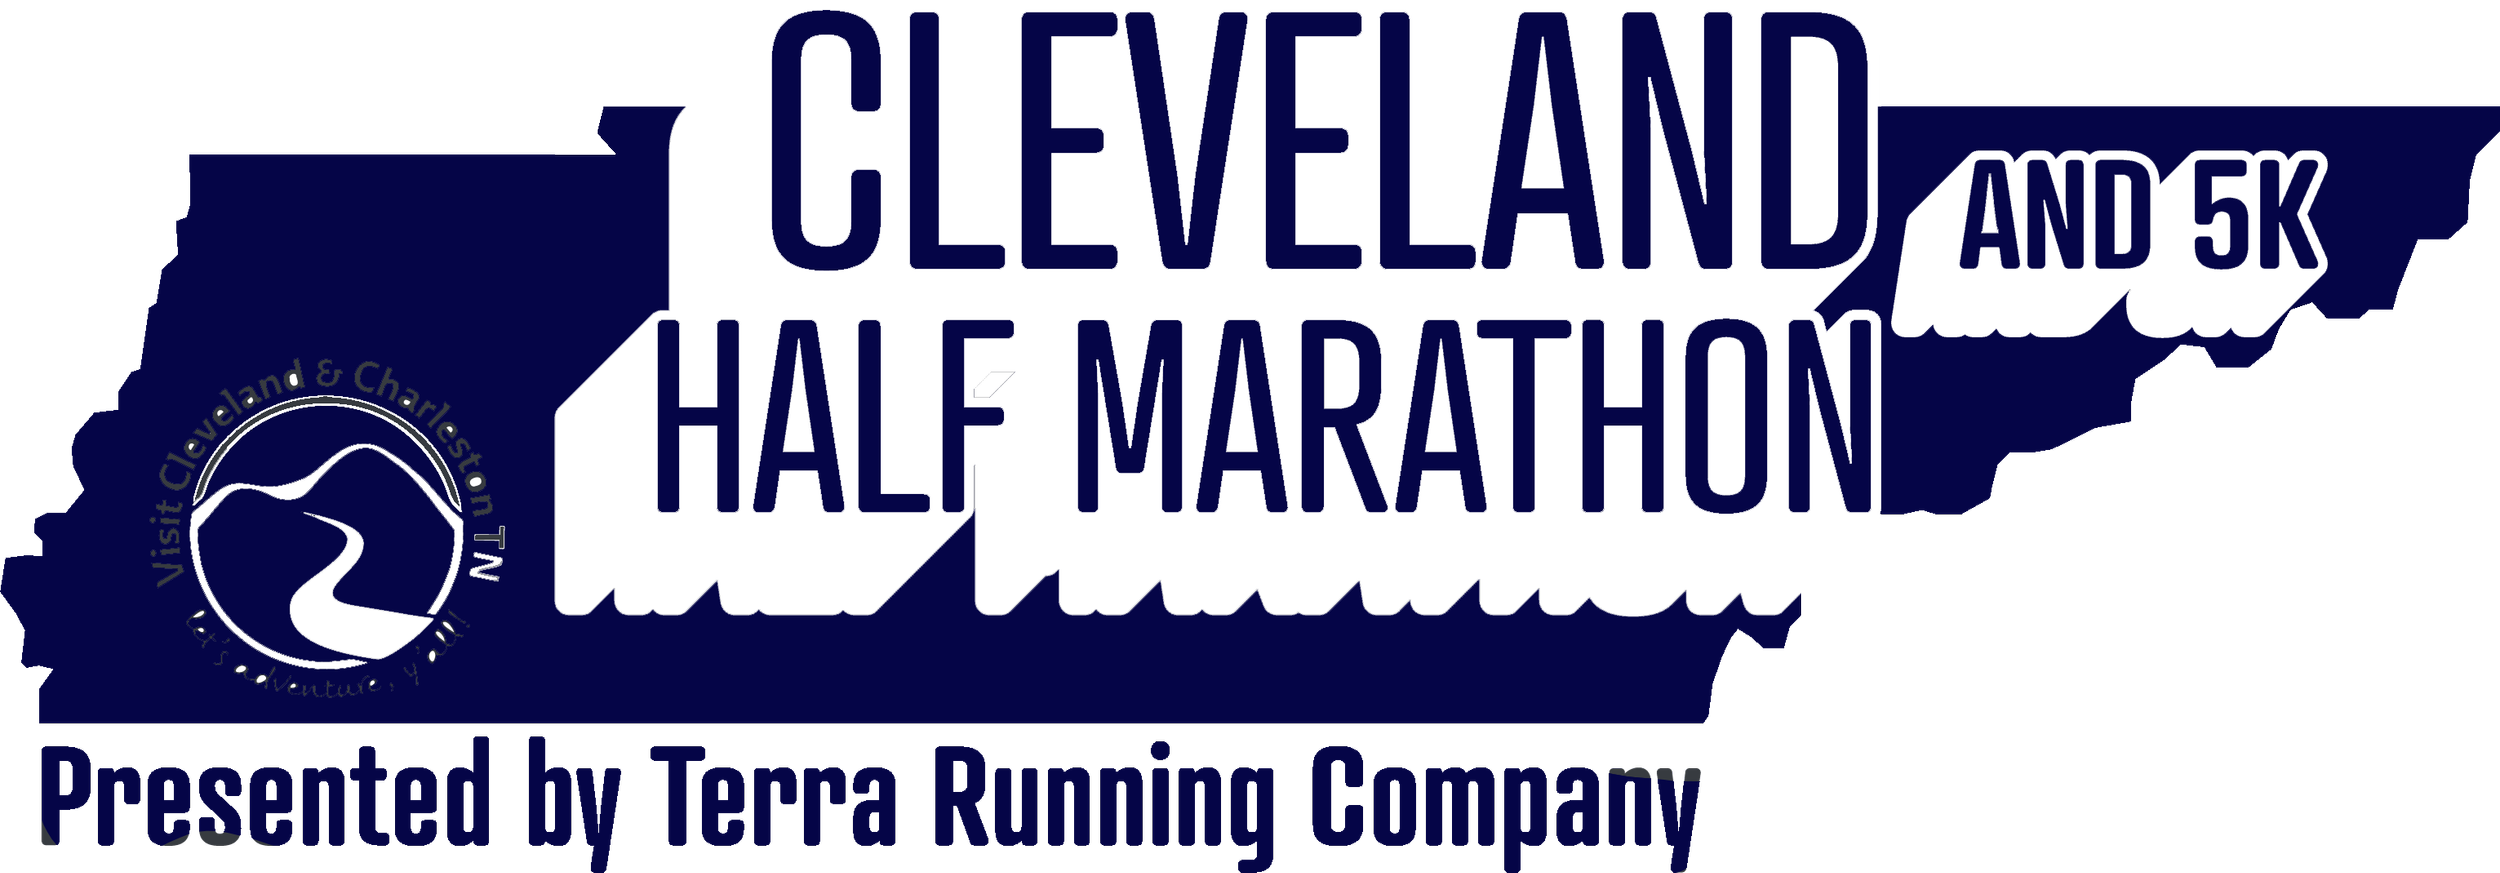 Cleveland Half Marathon